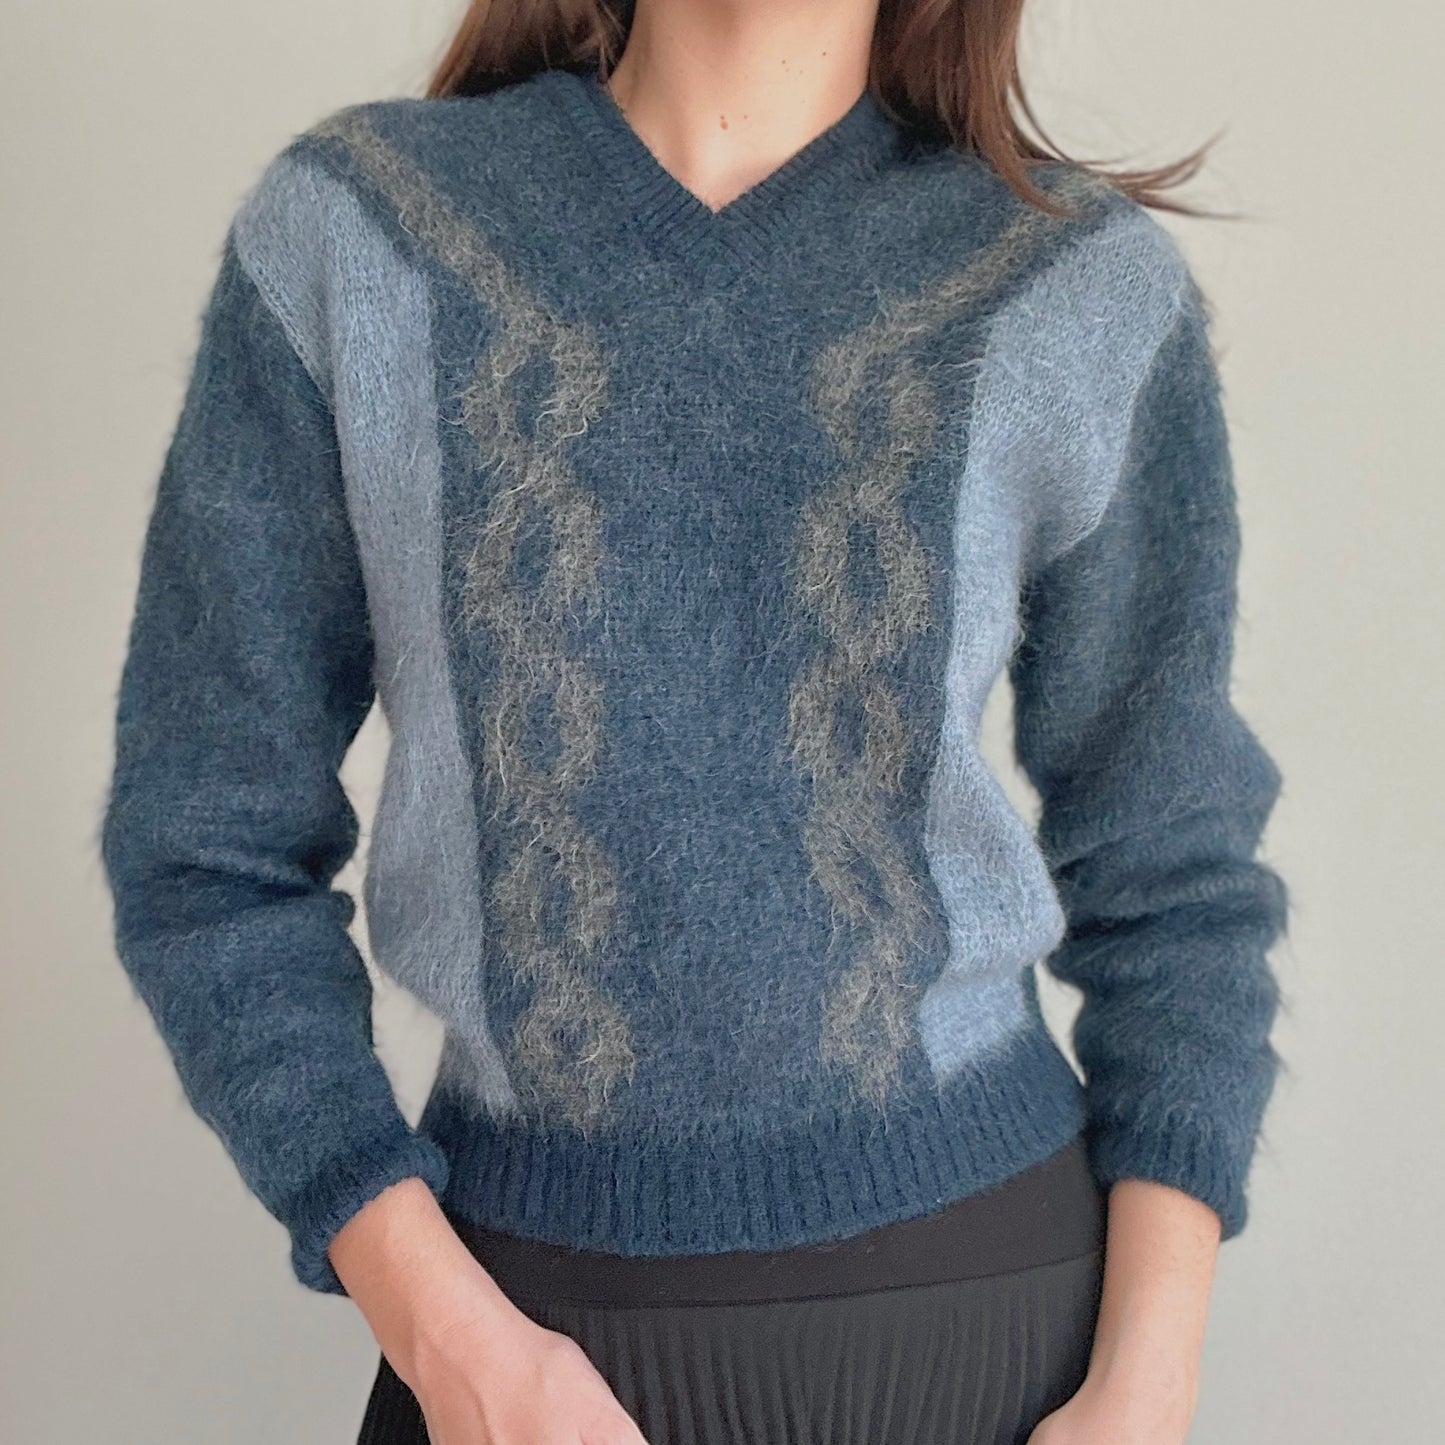 70's Navy Fuzzy Knit Sweater / SZ S/M